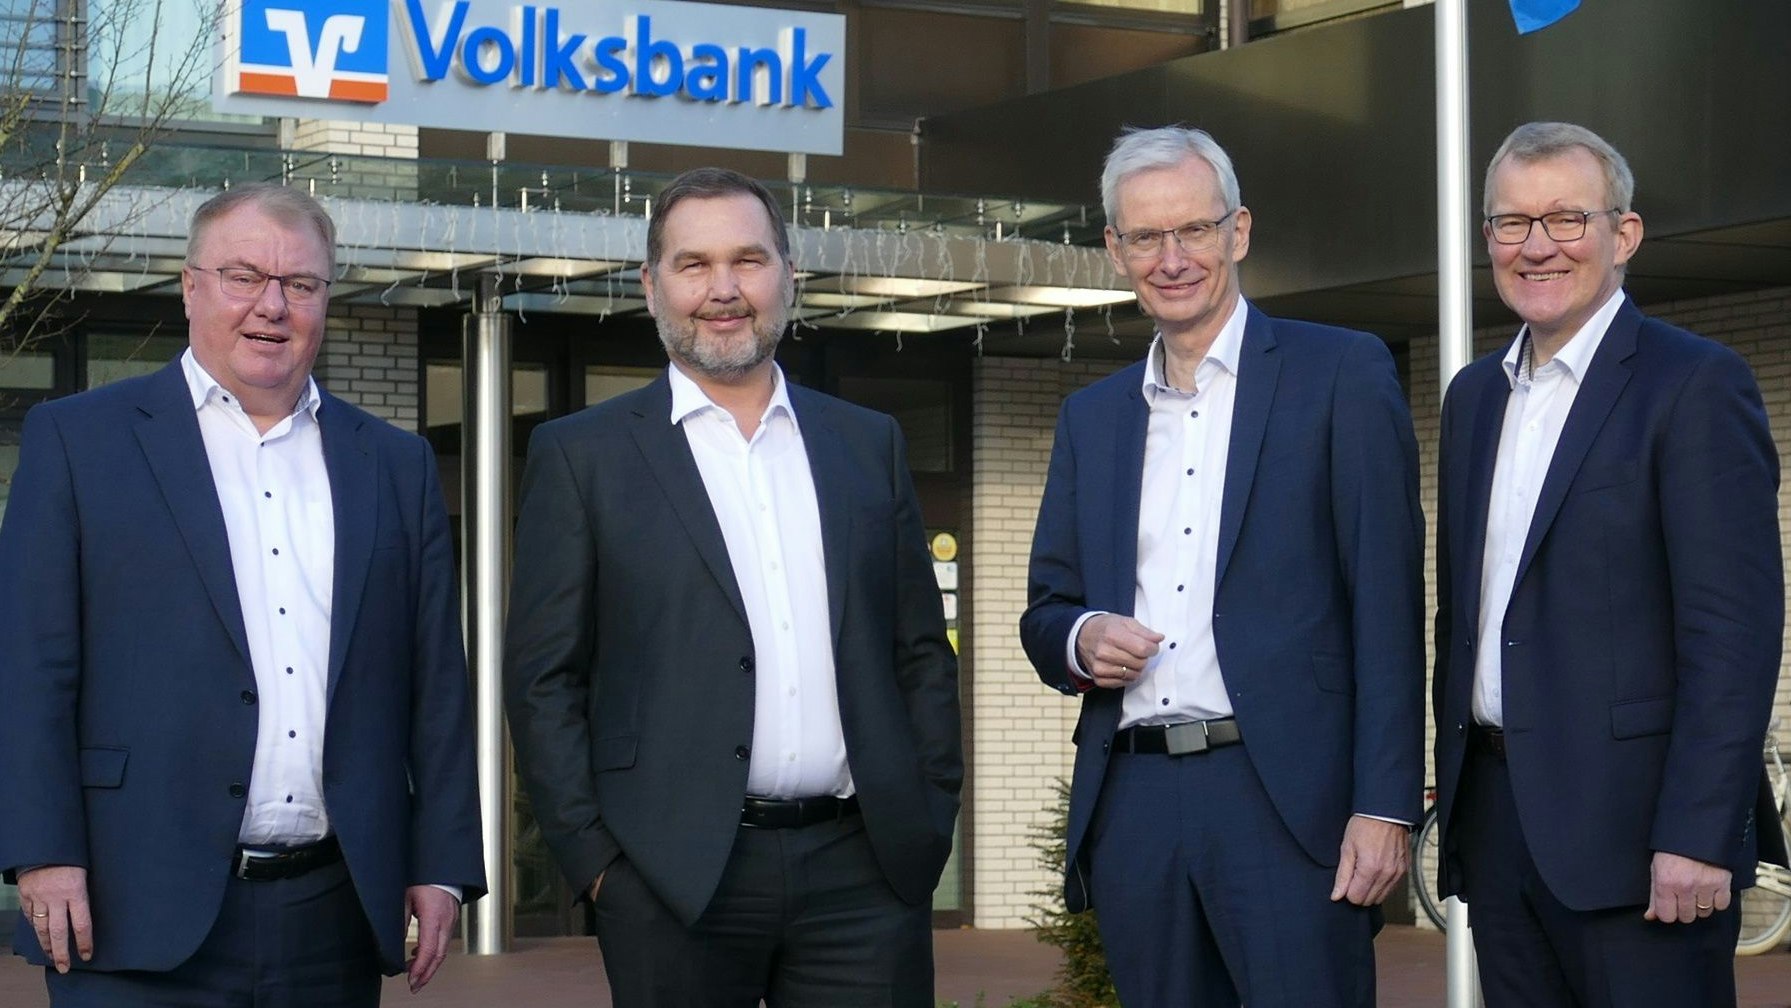 Bank-Vorstand Johannes Wilke (2. von rechts) verlässt das Geldhaus nach 45 Jahren. Andreas Frye (von links), Stefan Awick und Nikolaus Hüls führen die Bank als dreiköpfiger Vorstand weiter. Foto: Stix